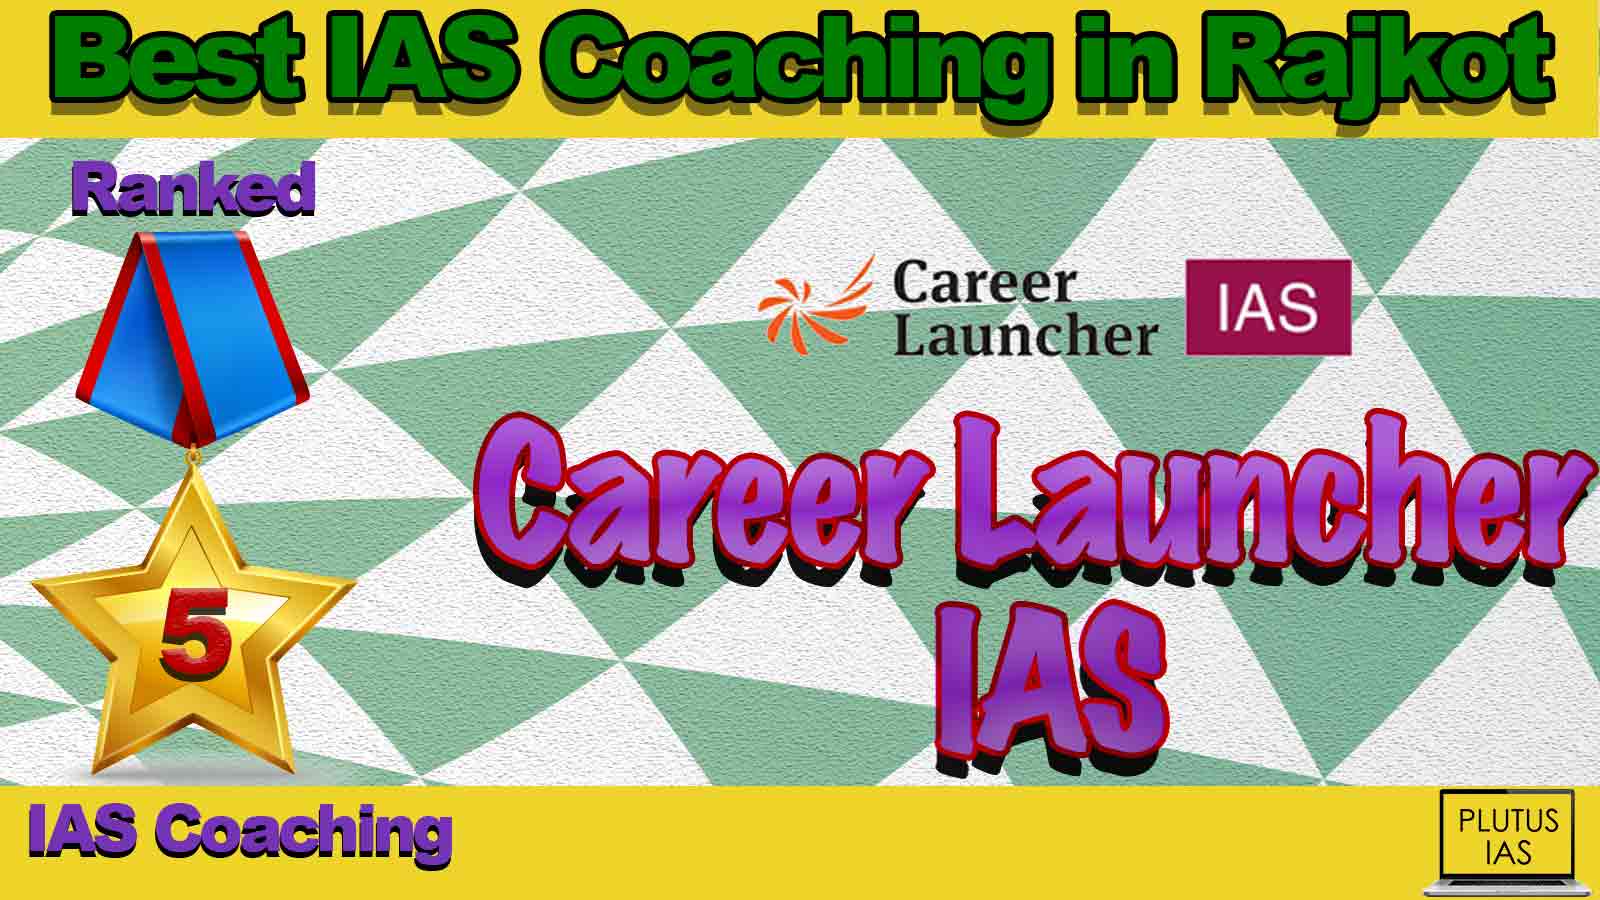 Best IAS Coaching in Rajkot